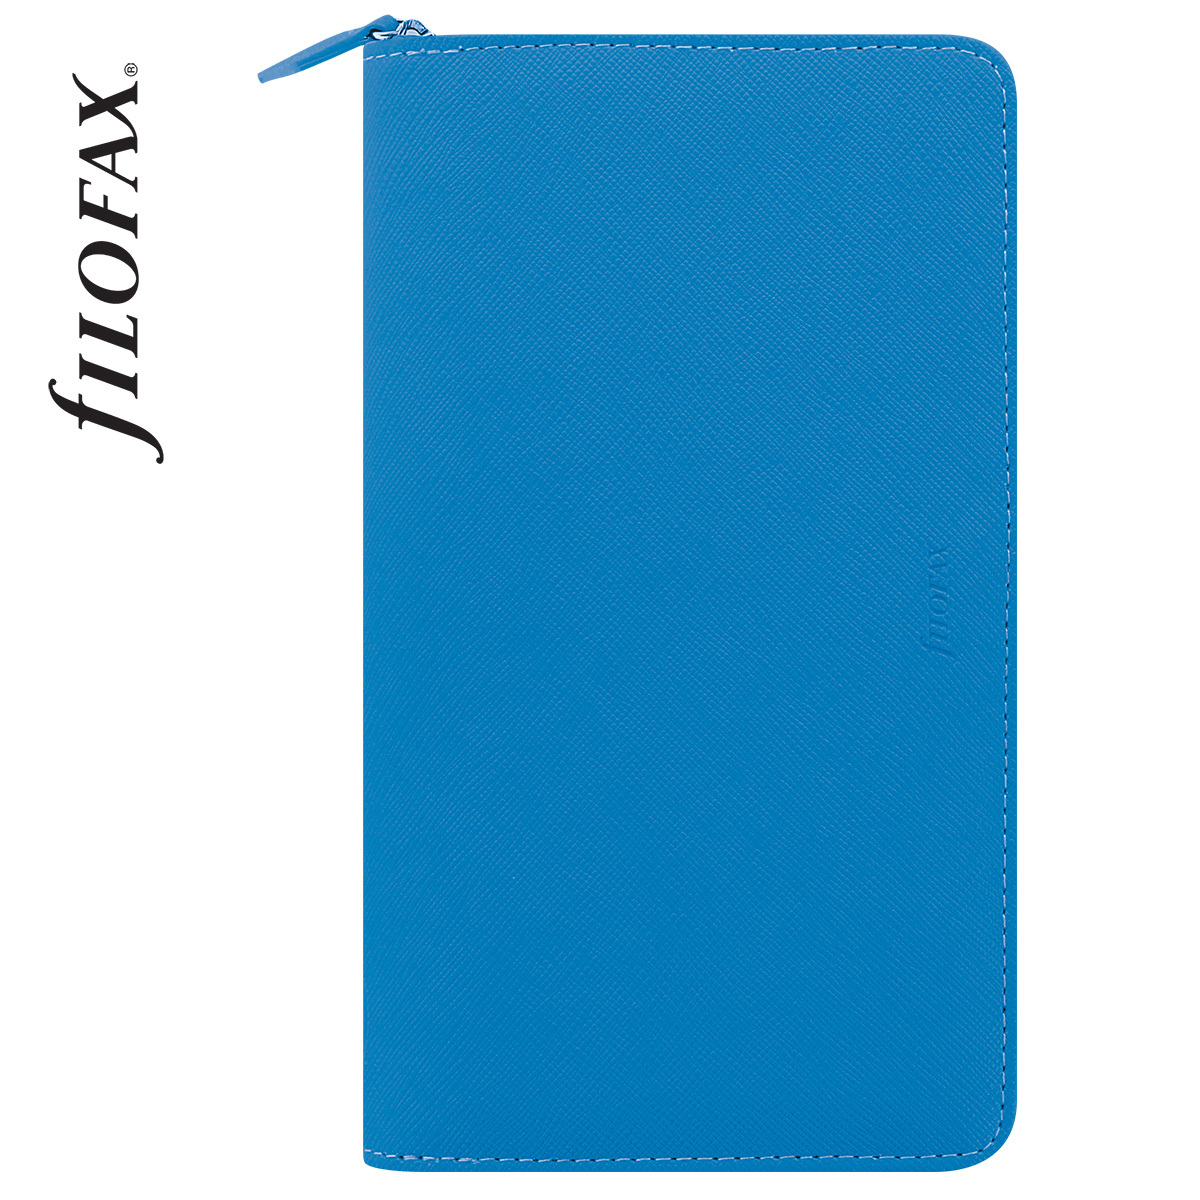 Filofax Saffiano Fluoro Personal Compact Zip Kék